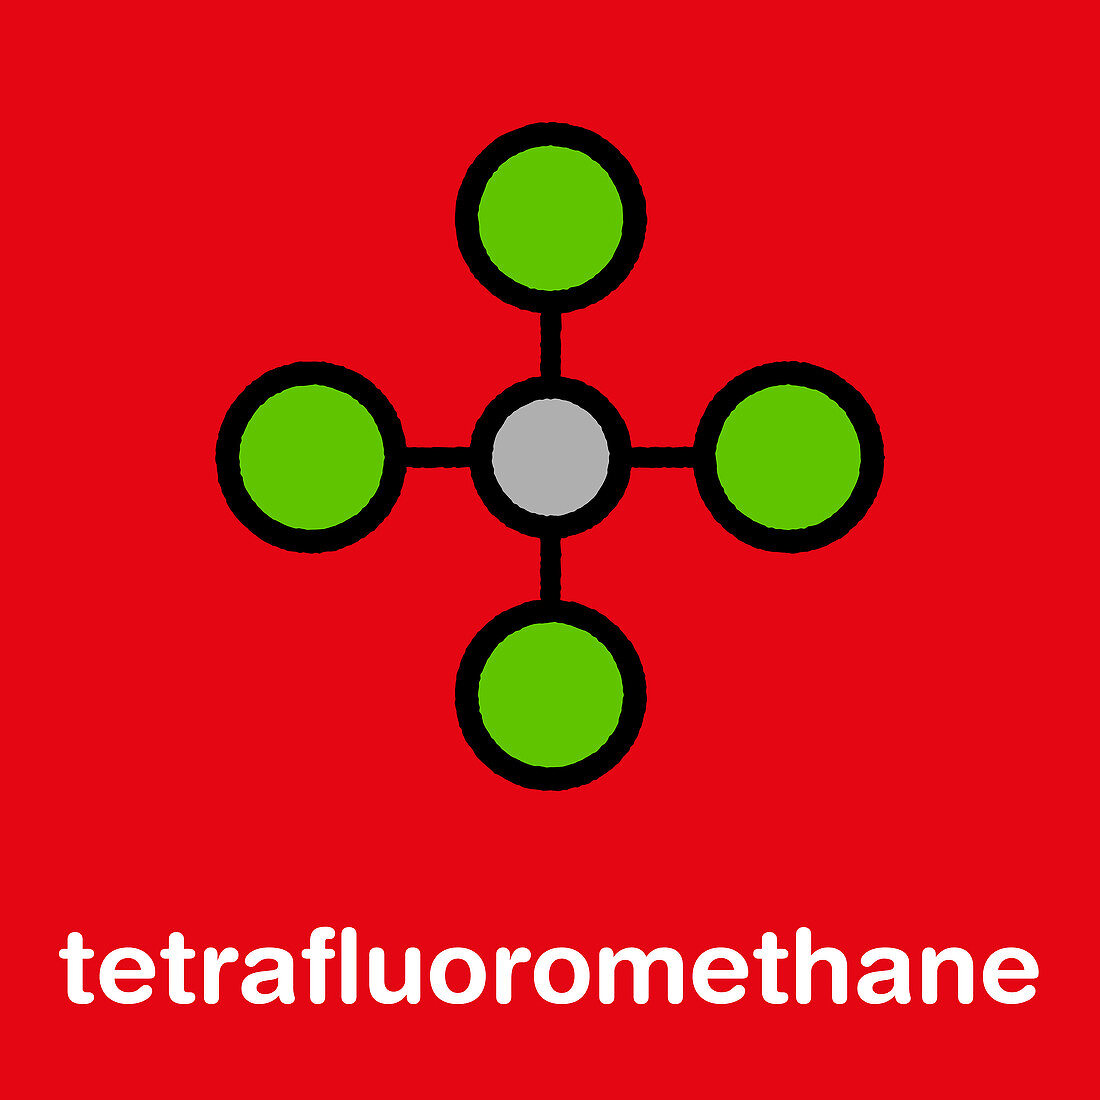 Tetrafluoromethane molecule, illustration